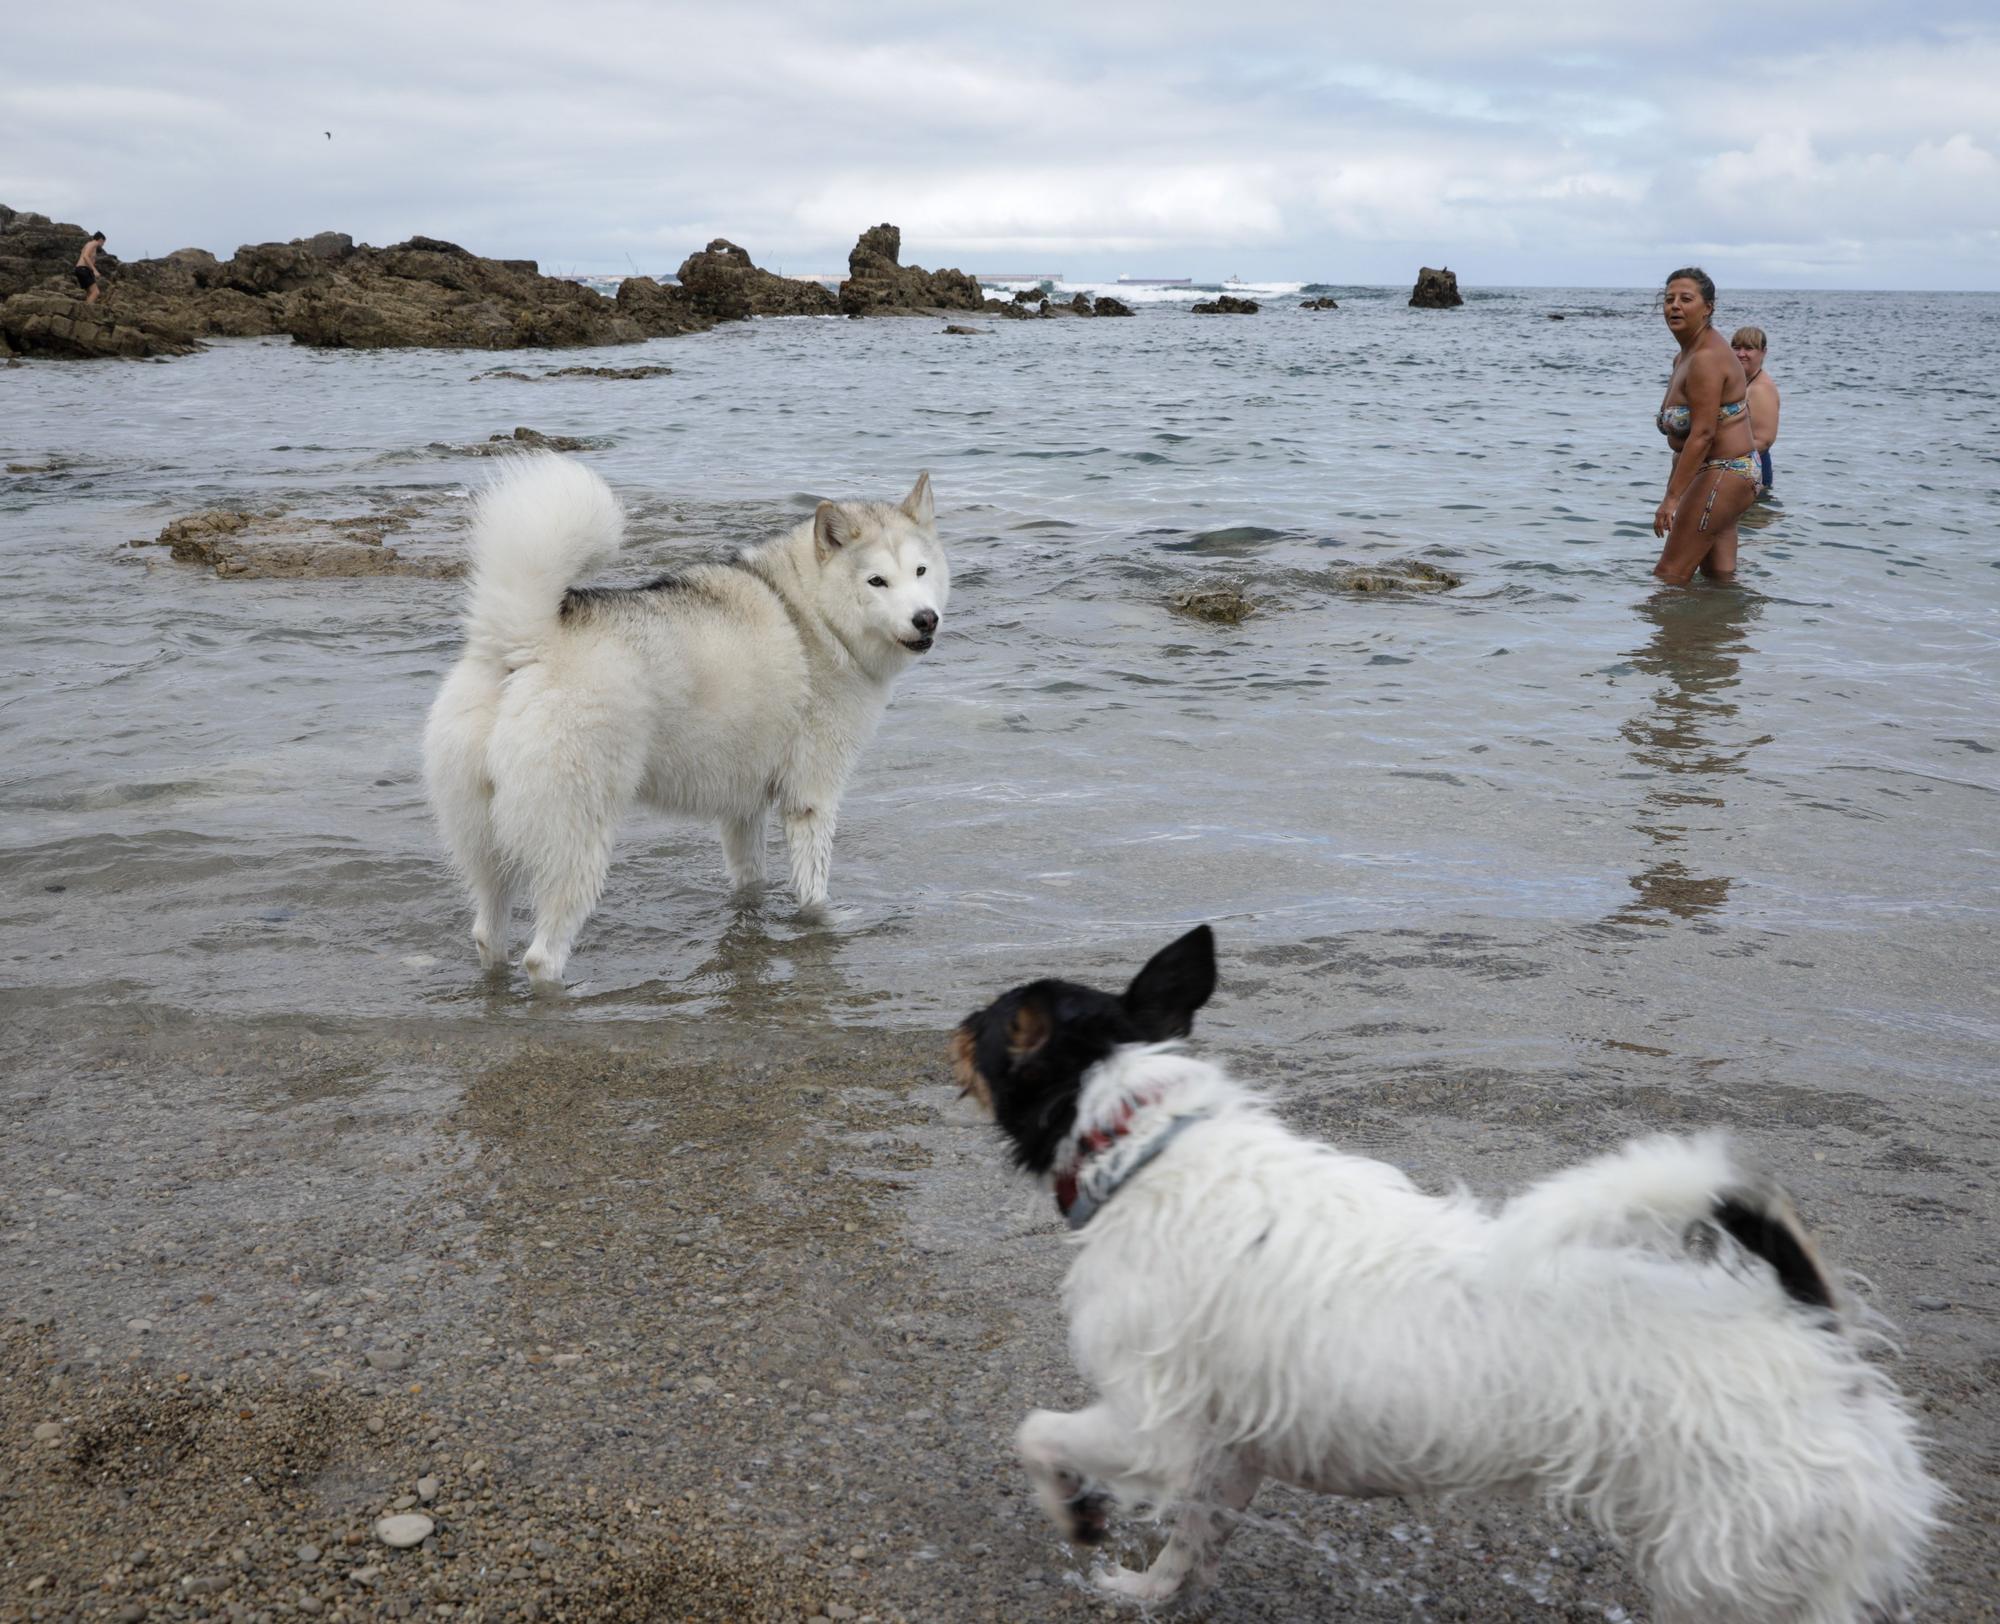 En imágenes: El perro y el bañista disfrutan en armonía